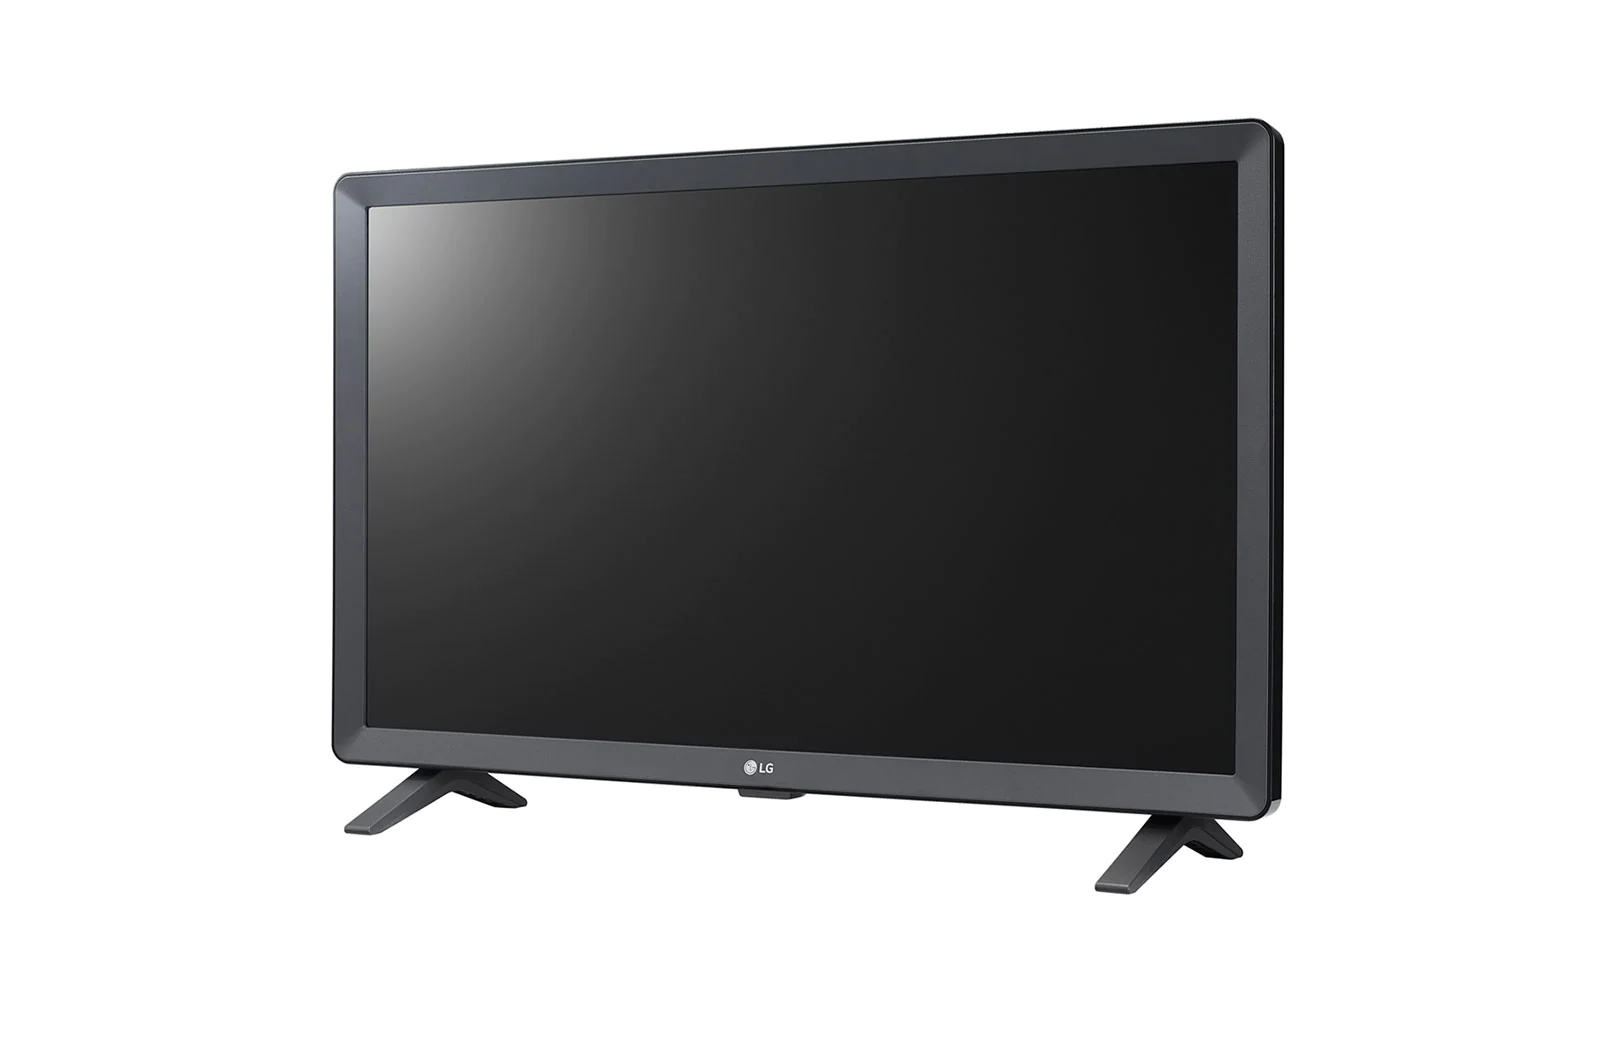 Tv LG de 24 pulgadas LED HD smart tv modelo 24TL520S-PS Santa Cruz